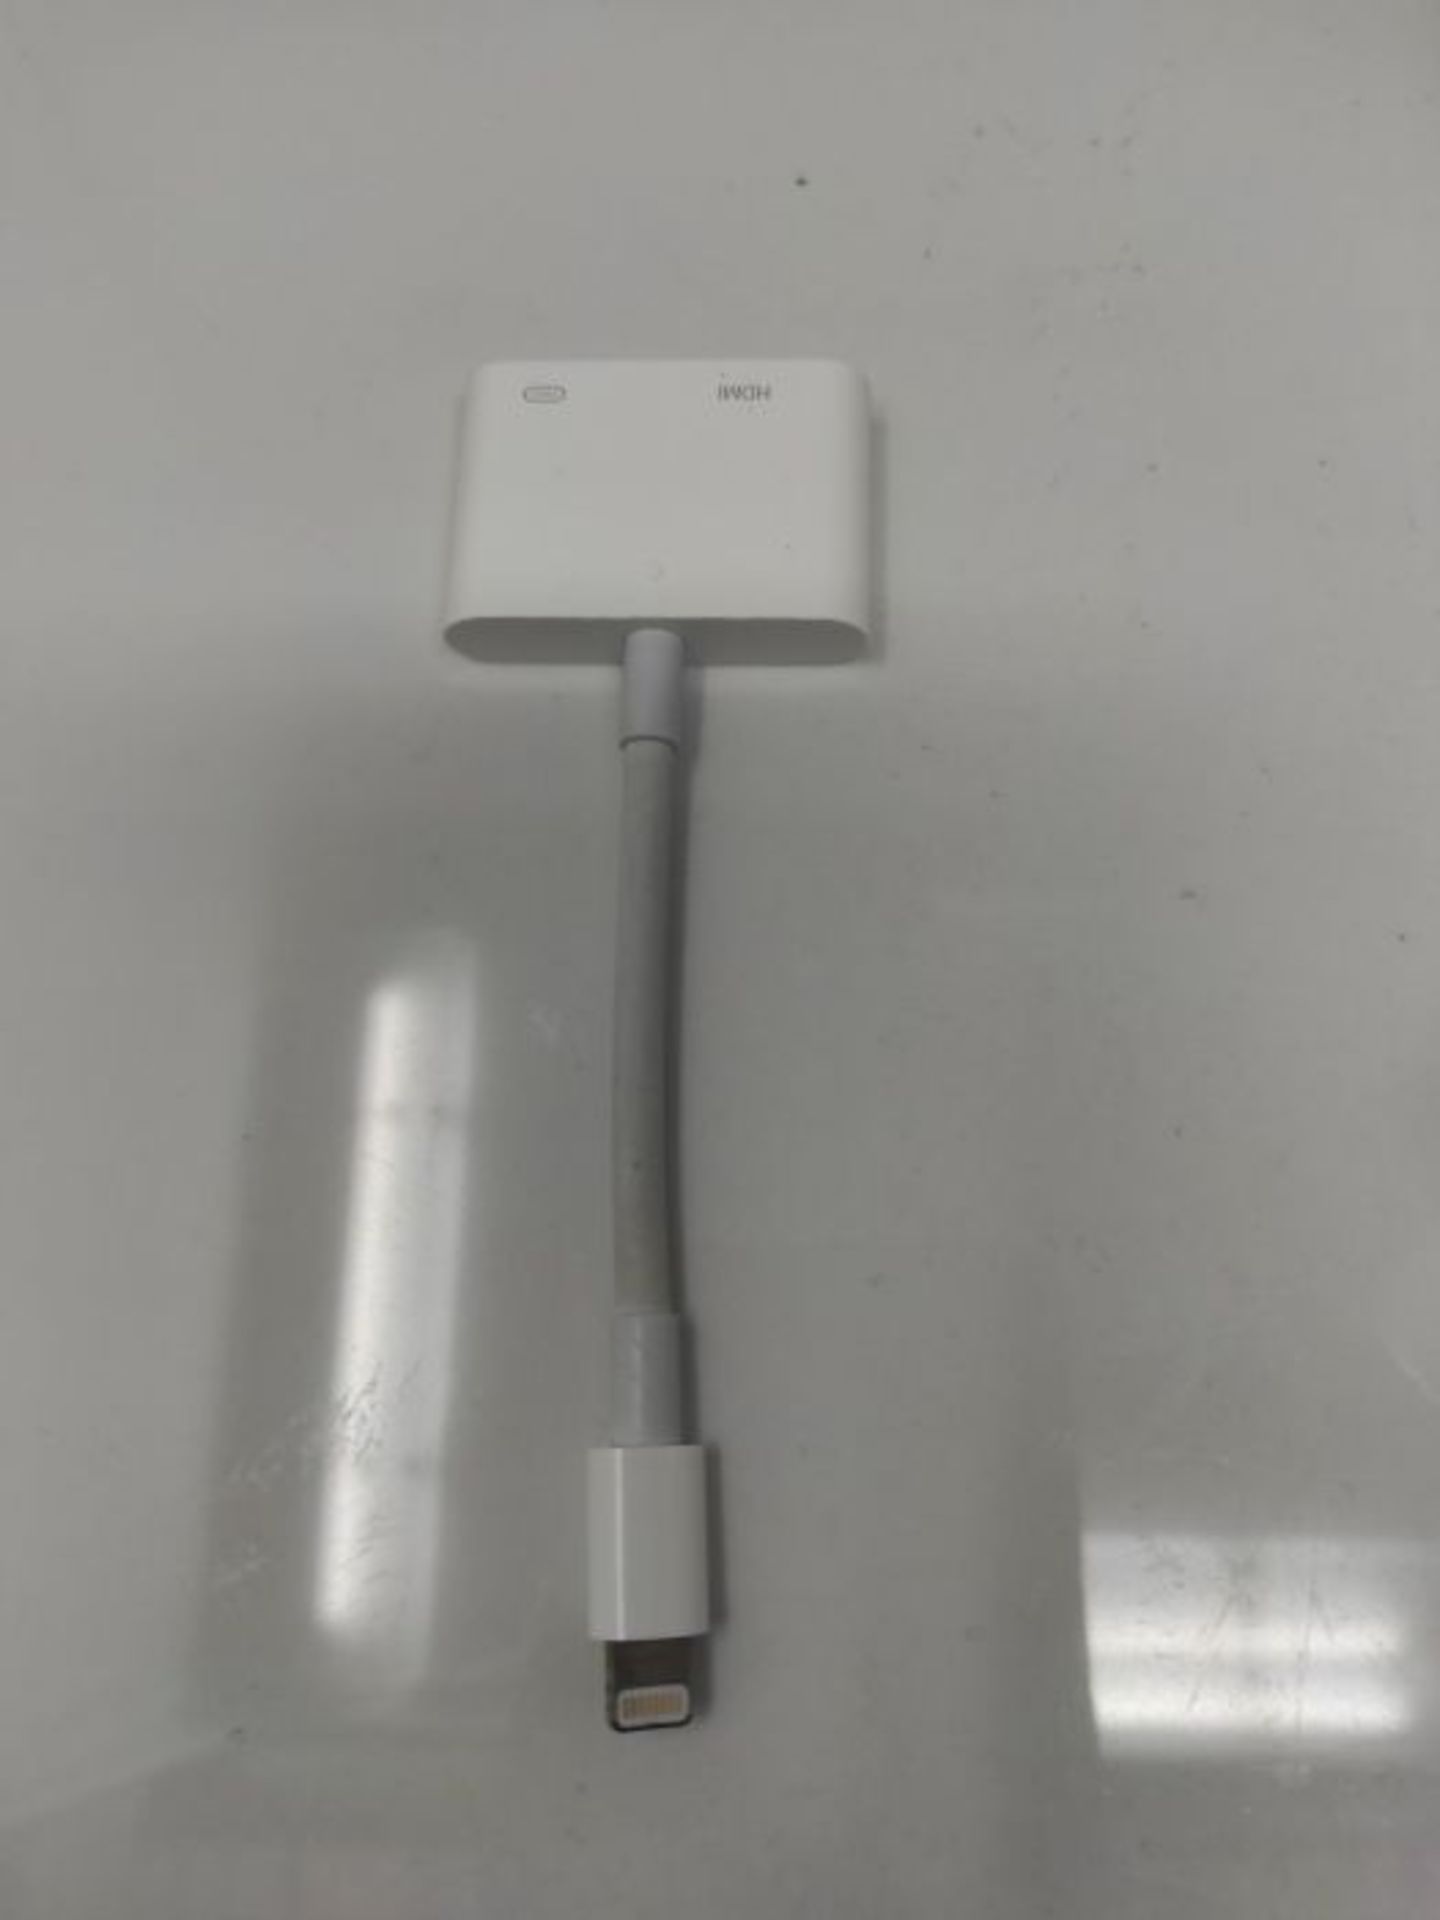 Apple Lightning Digital AV Adapter - Image 2 of 2